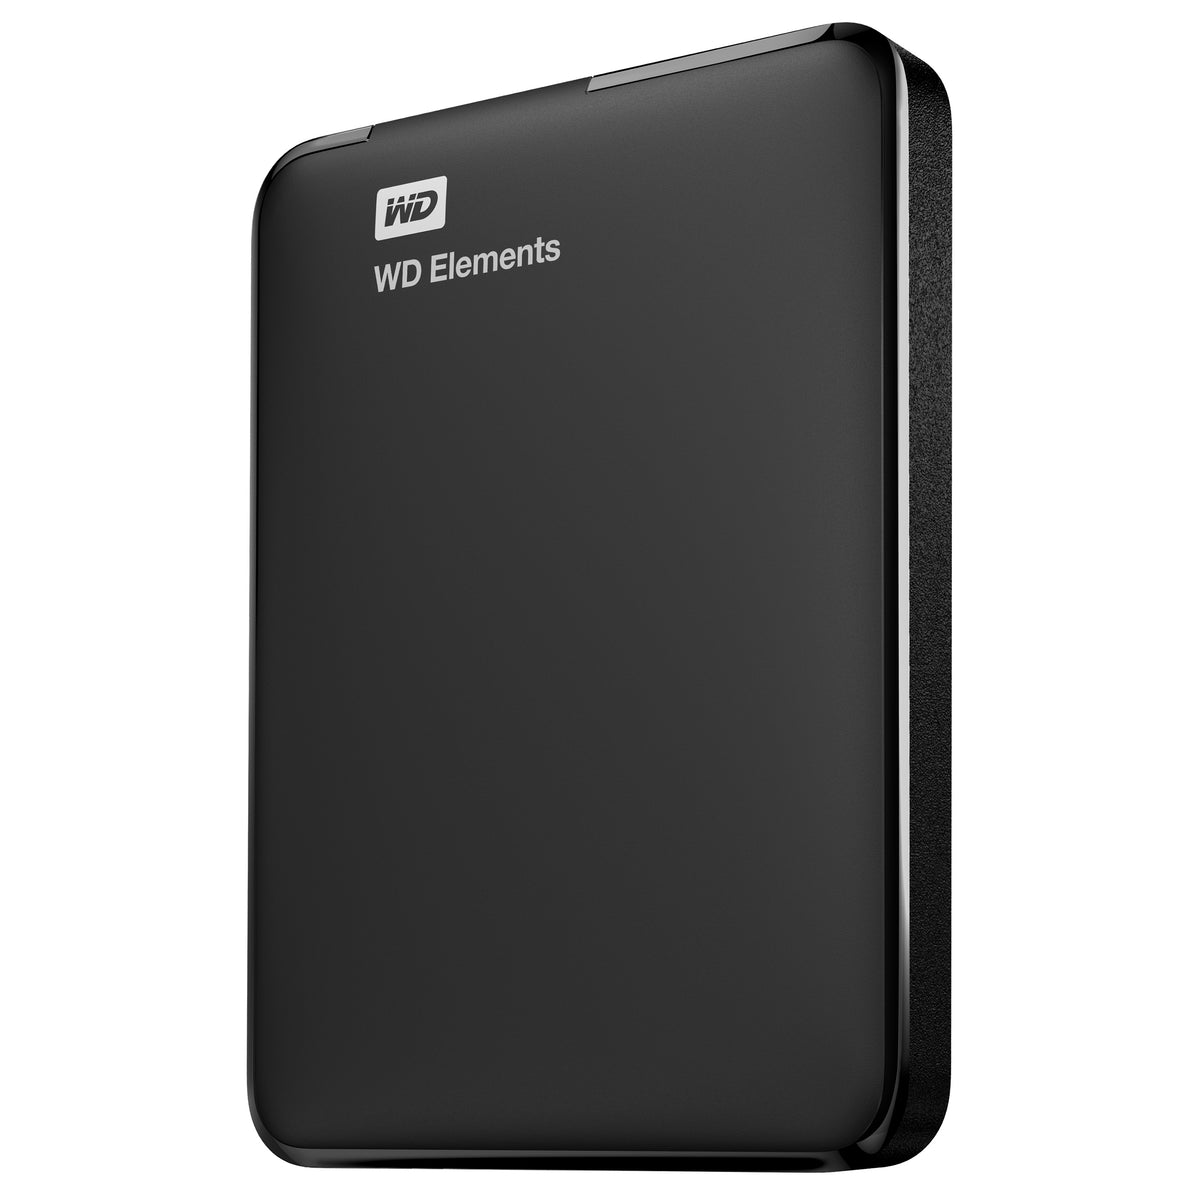 HDD disk 1TB Western Digital Elements (WDBUZG0010BBK-WESN)